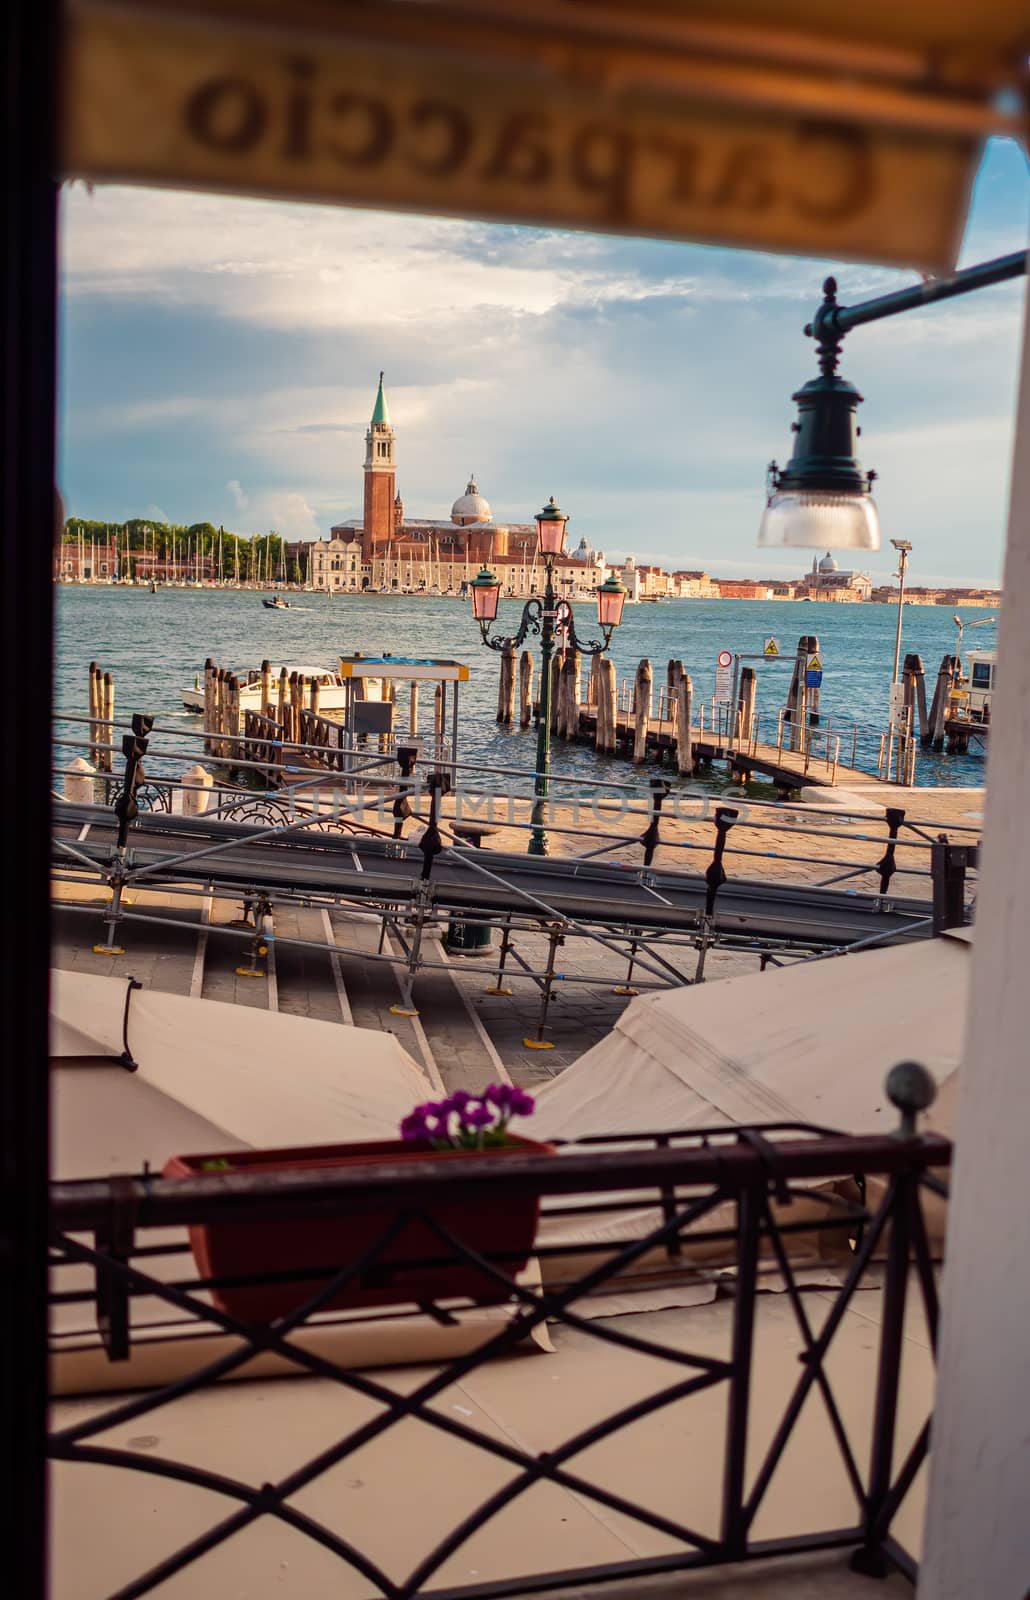 San Giorgio Maggiore in Venice seen through a window - Italy by COffe